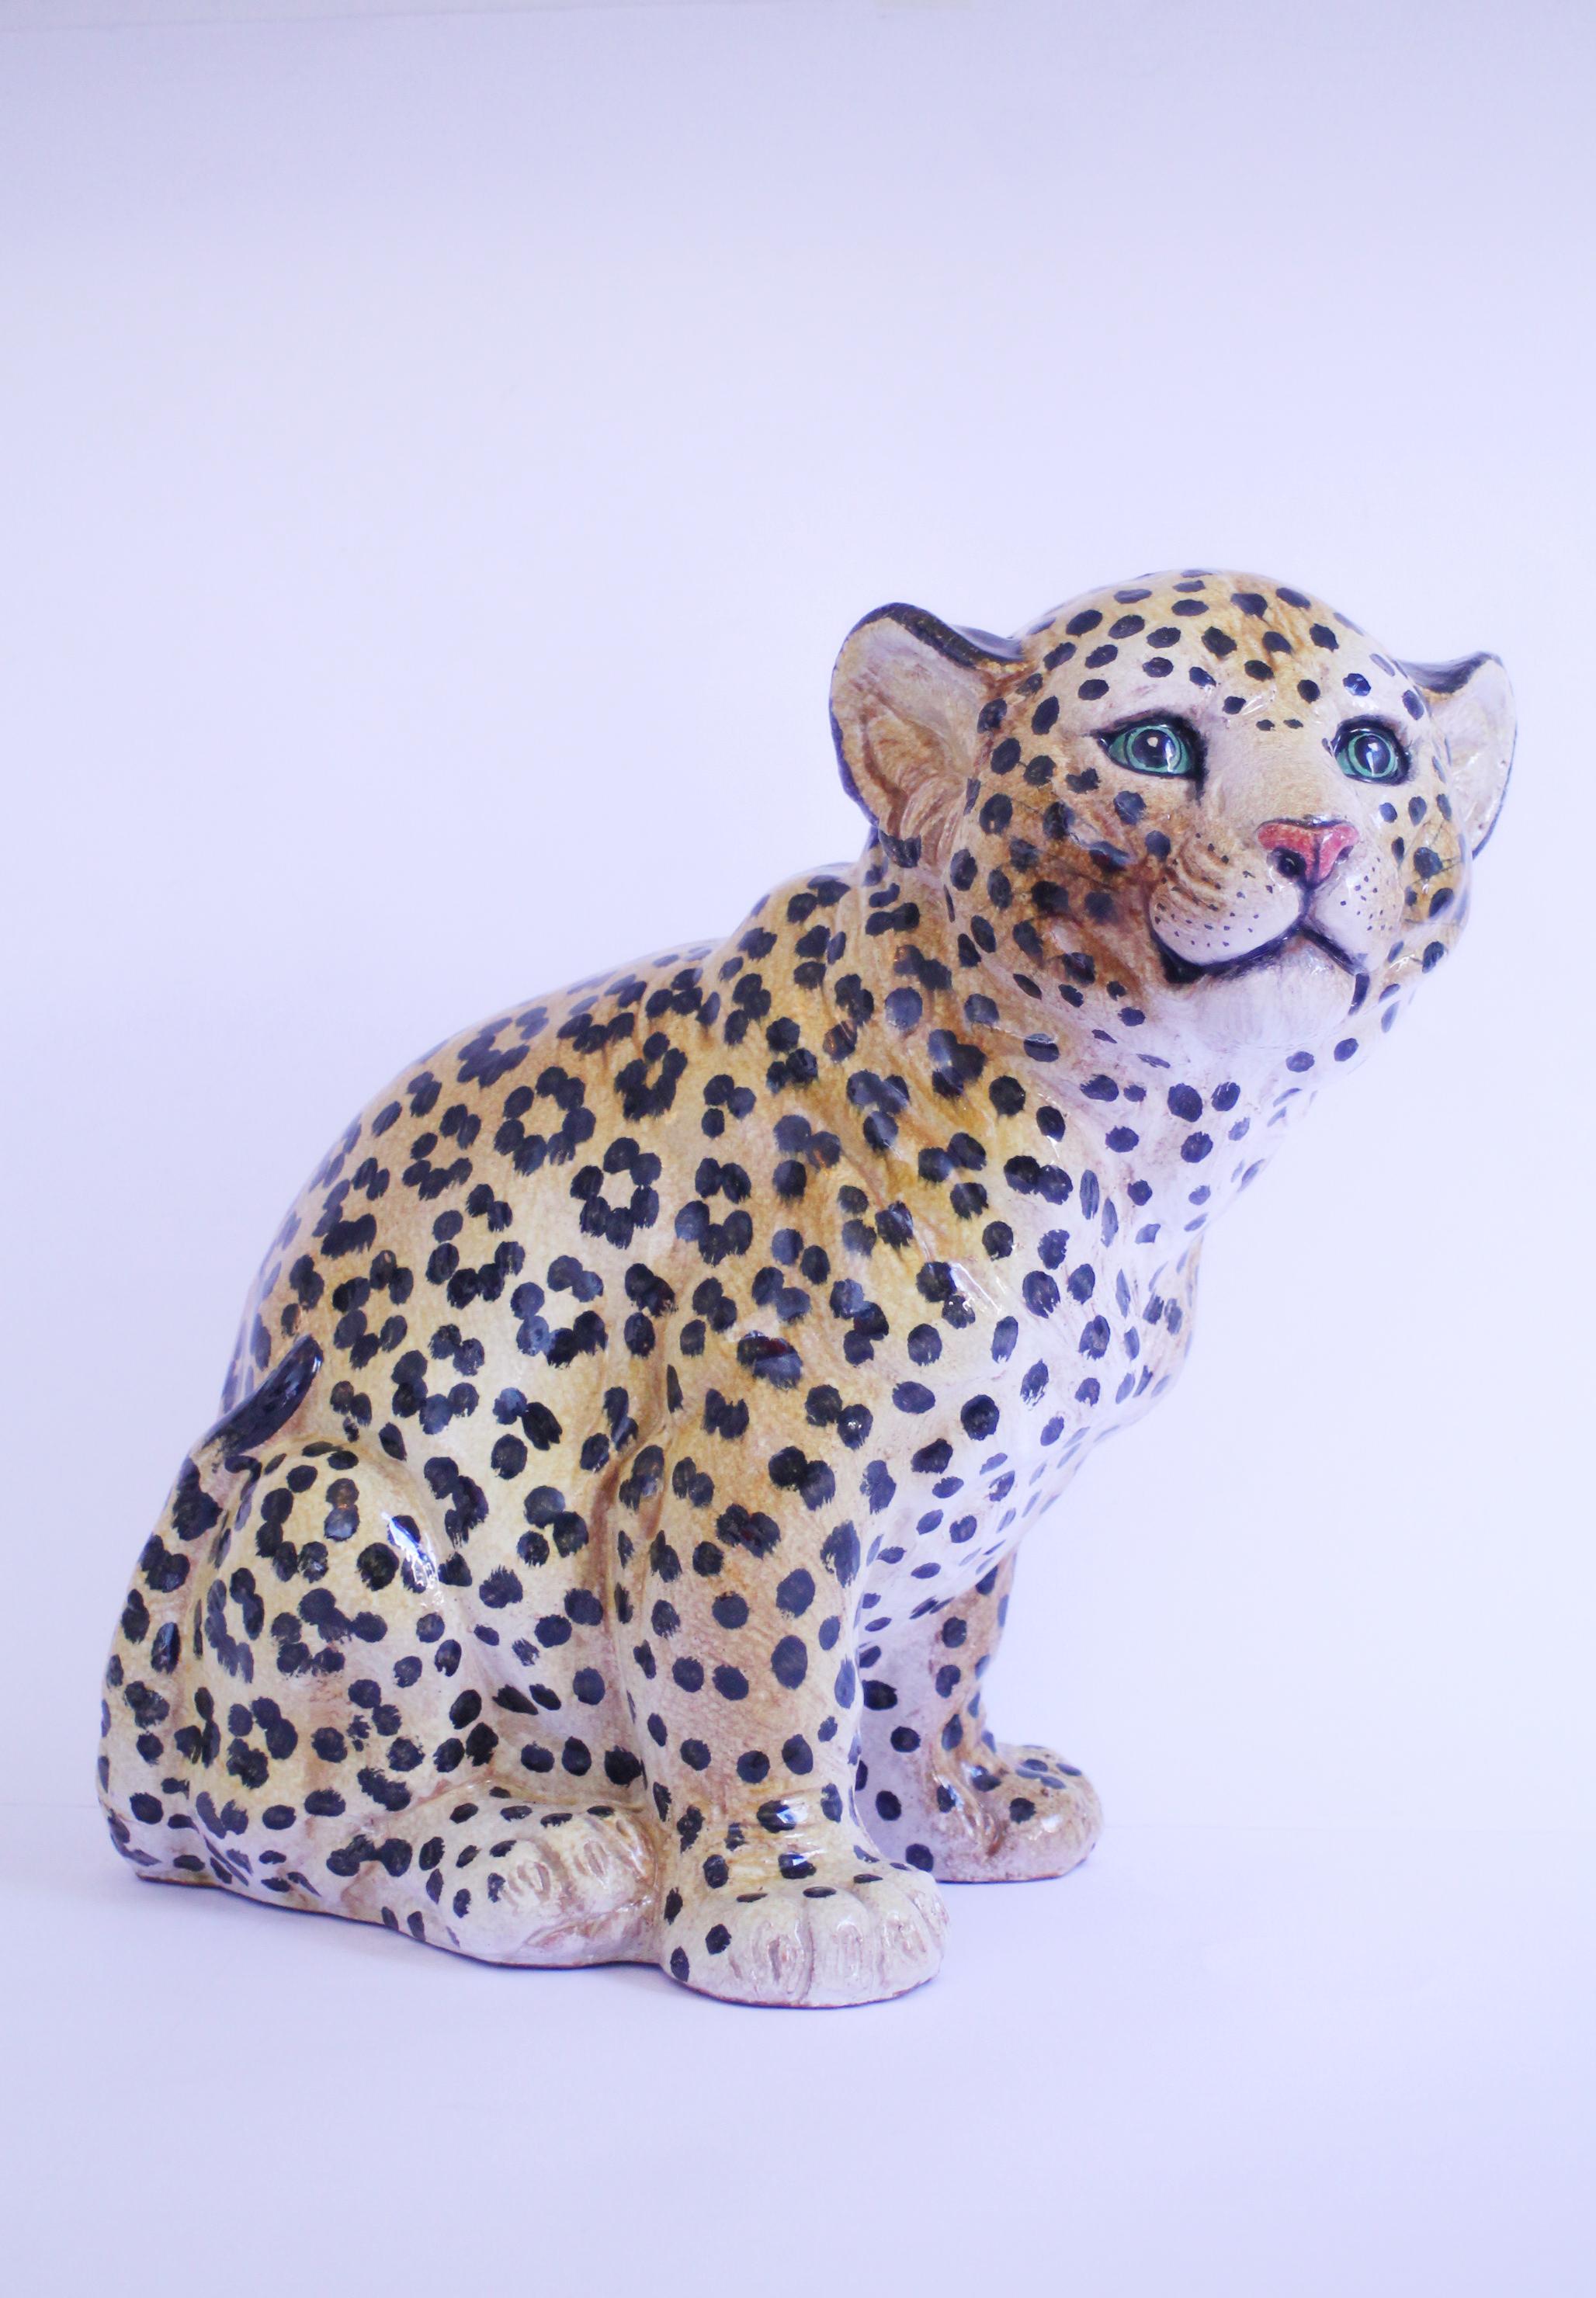 Majolique italienne en léopard des années 1950 faite à la main. Fabriqué en Italie !

Fabriqué et peint à la main (voir photos du bas)
Dimensions : 43 hauteur x 43 x 34 cm (17x17x13in.)
Poids : 10 kg (21 livres environ)
Condit : Utilisé avec